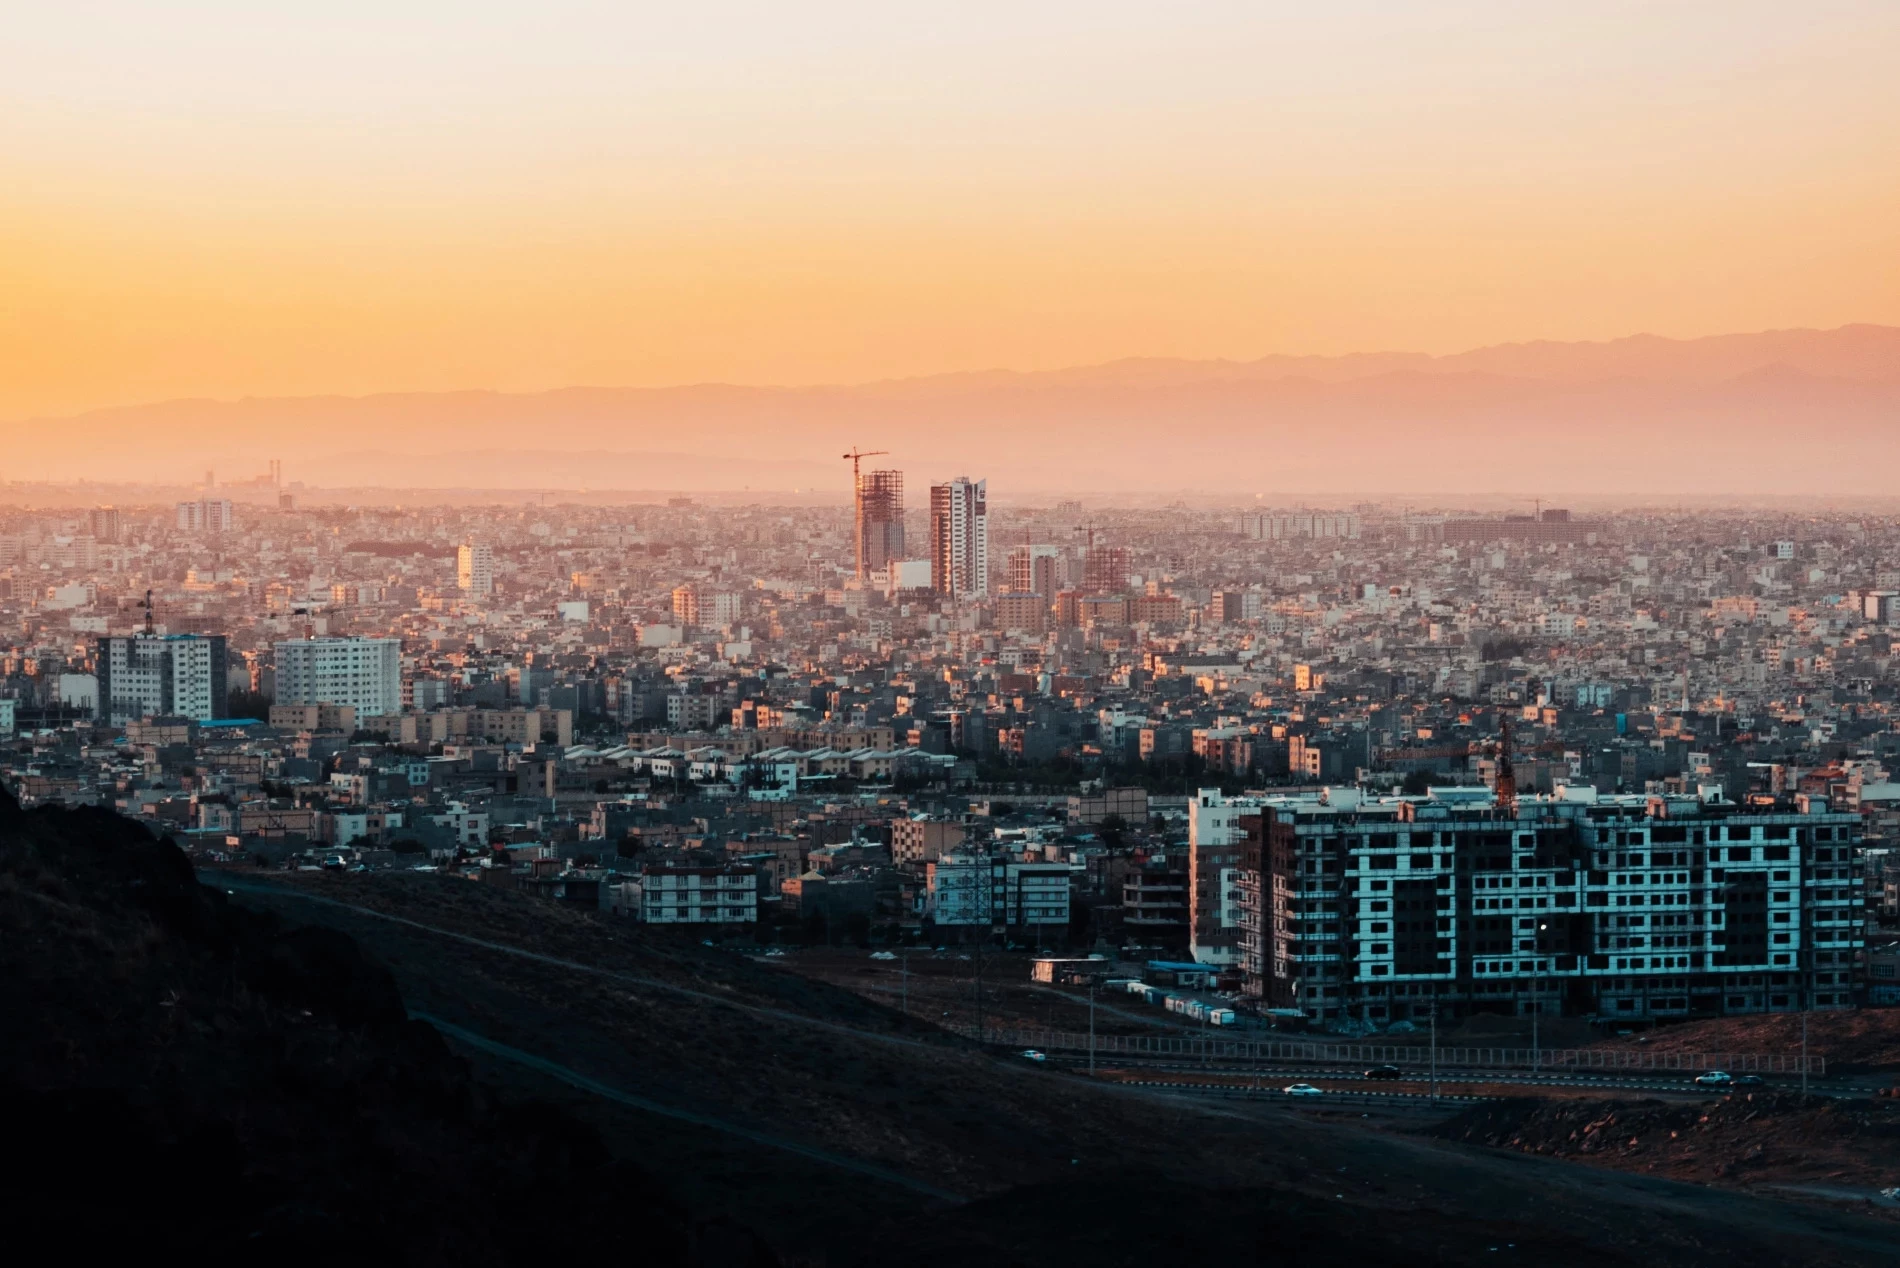 De tweede stad van Iran is Mashhad (3 miljoen inwoners), gelegen in het noordoosten van het land